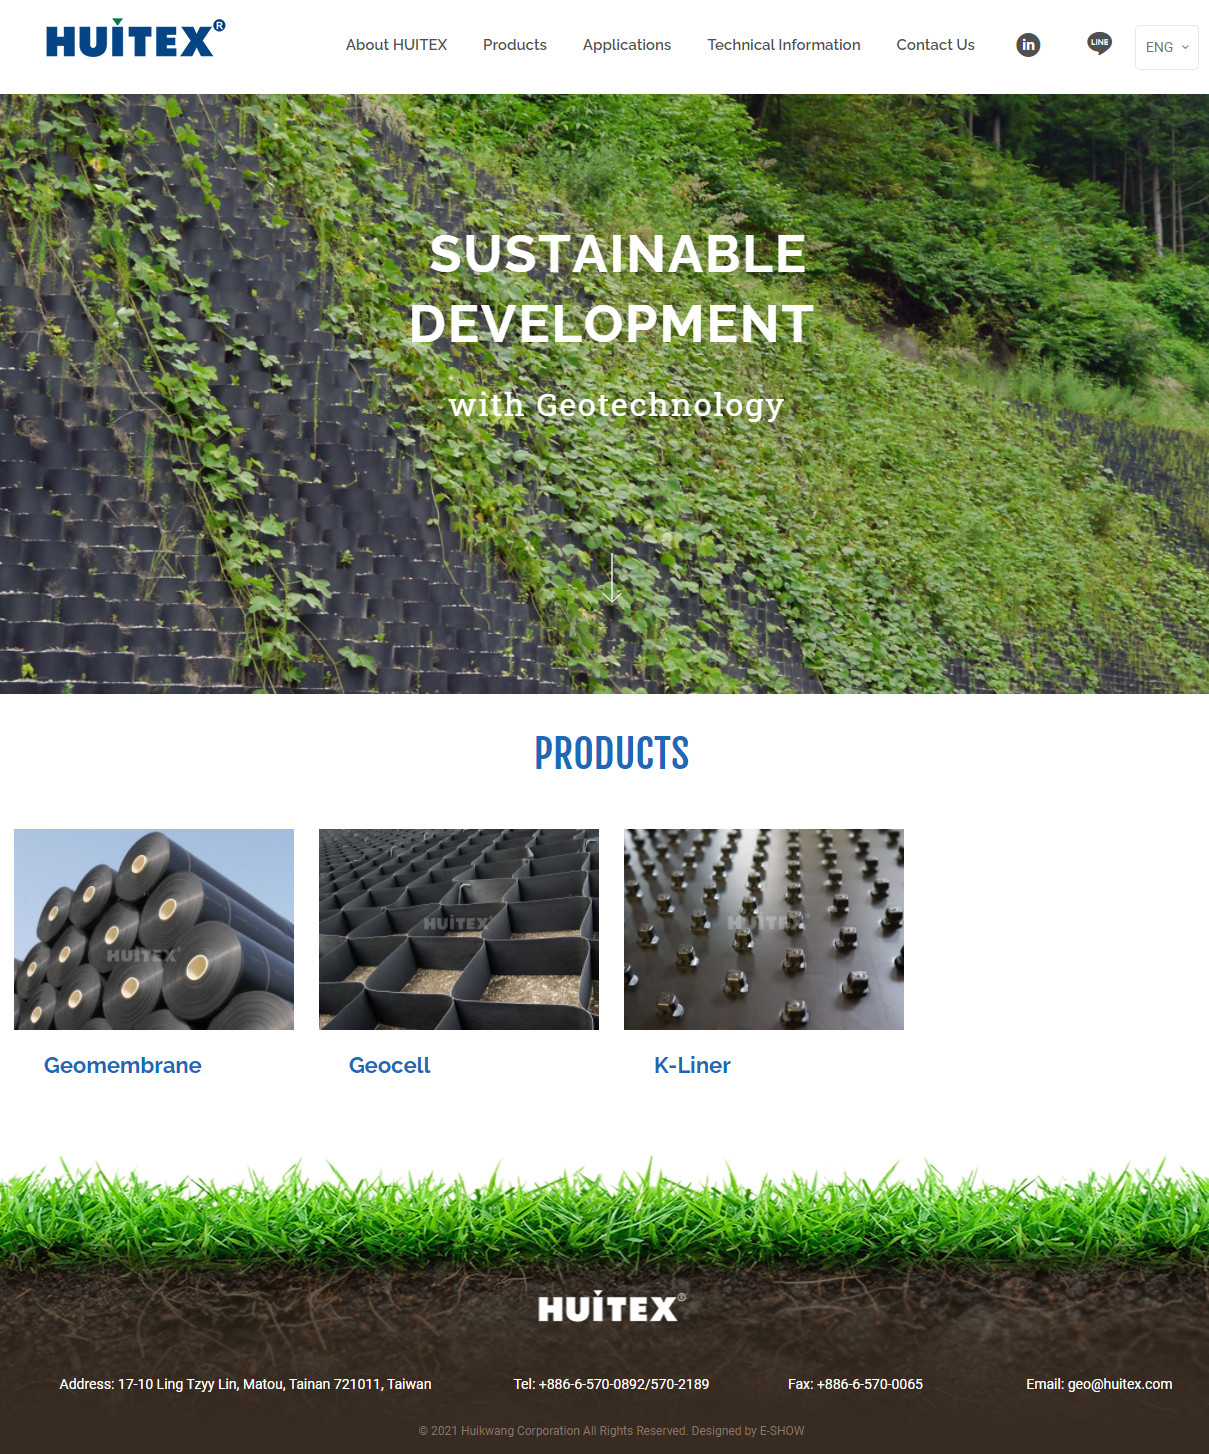 Huitex 響應式專案網站設計
網站設計